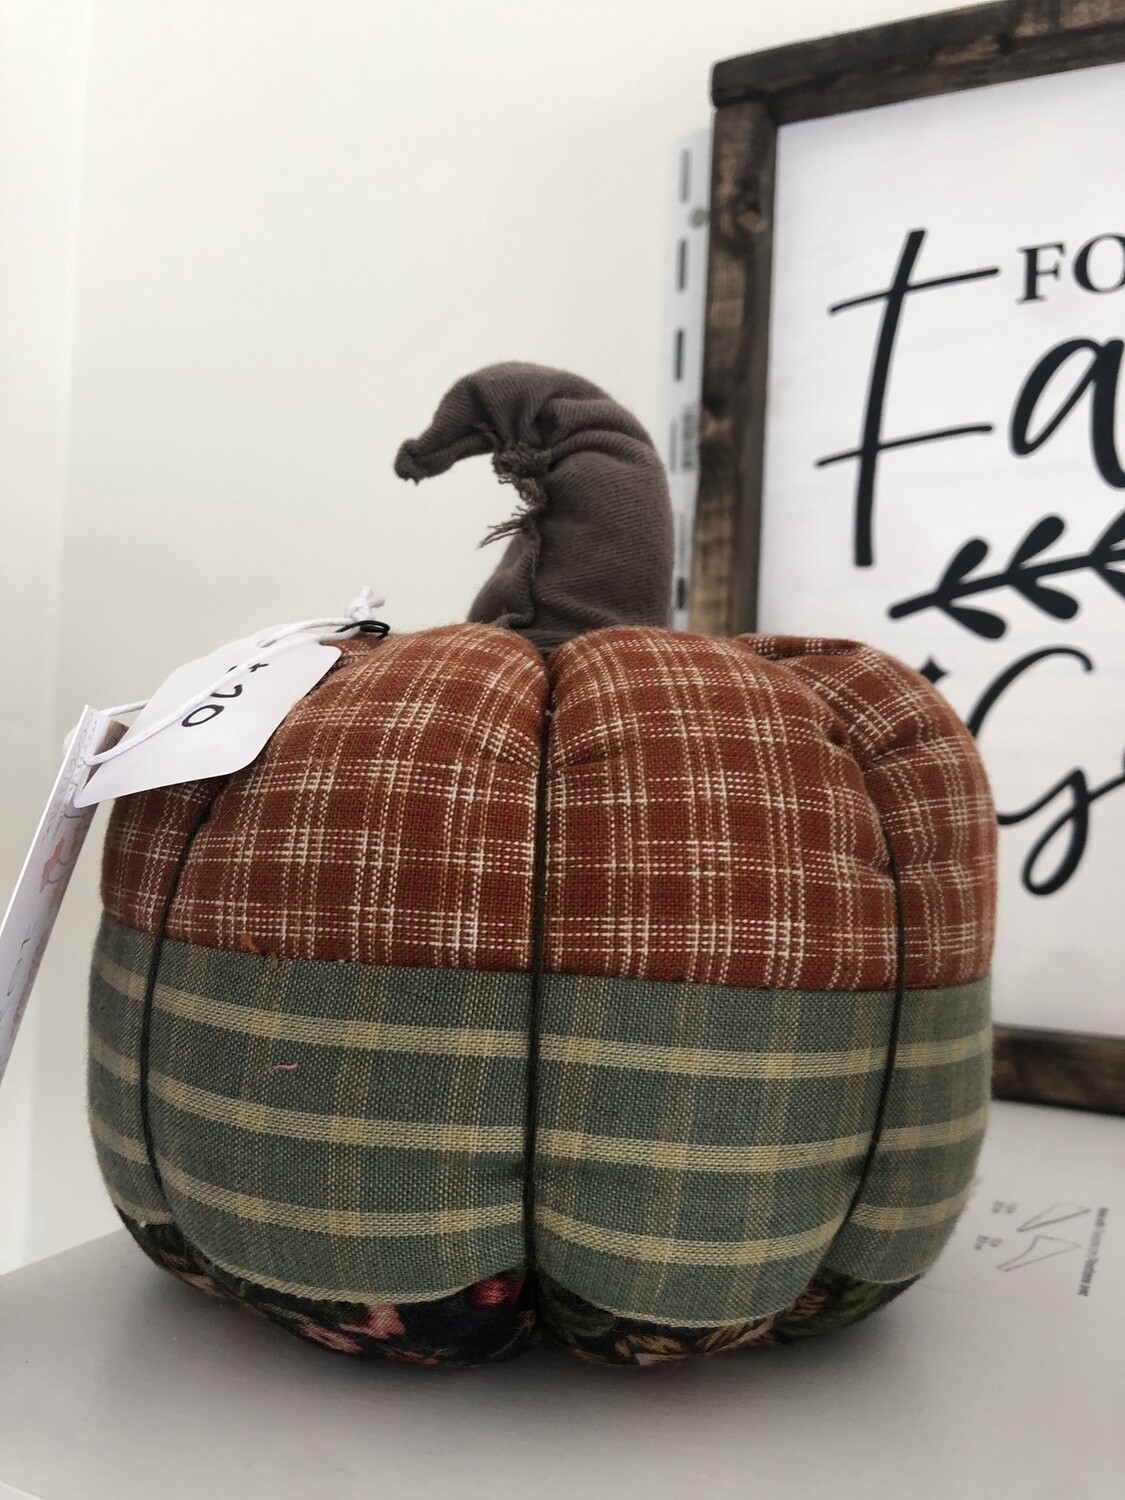 Fabric Pumpkin